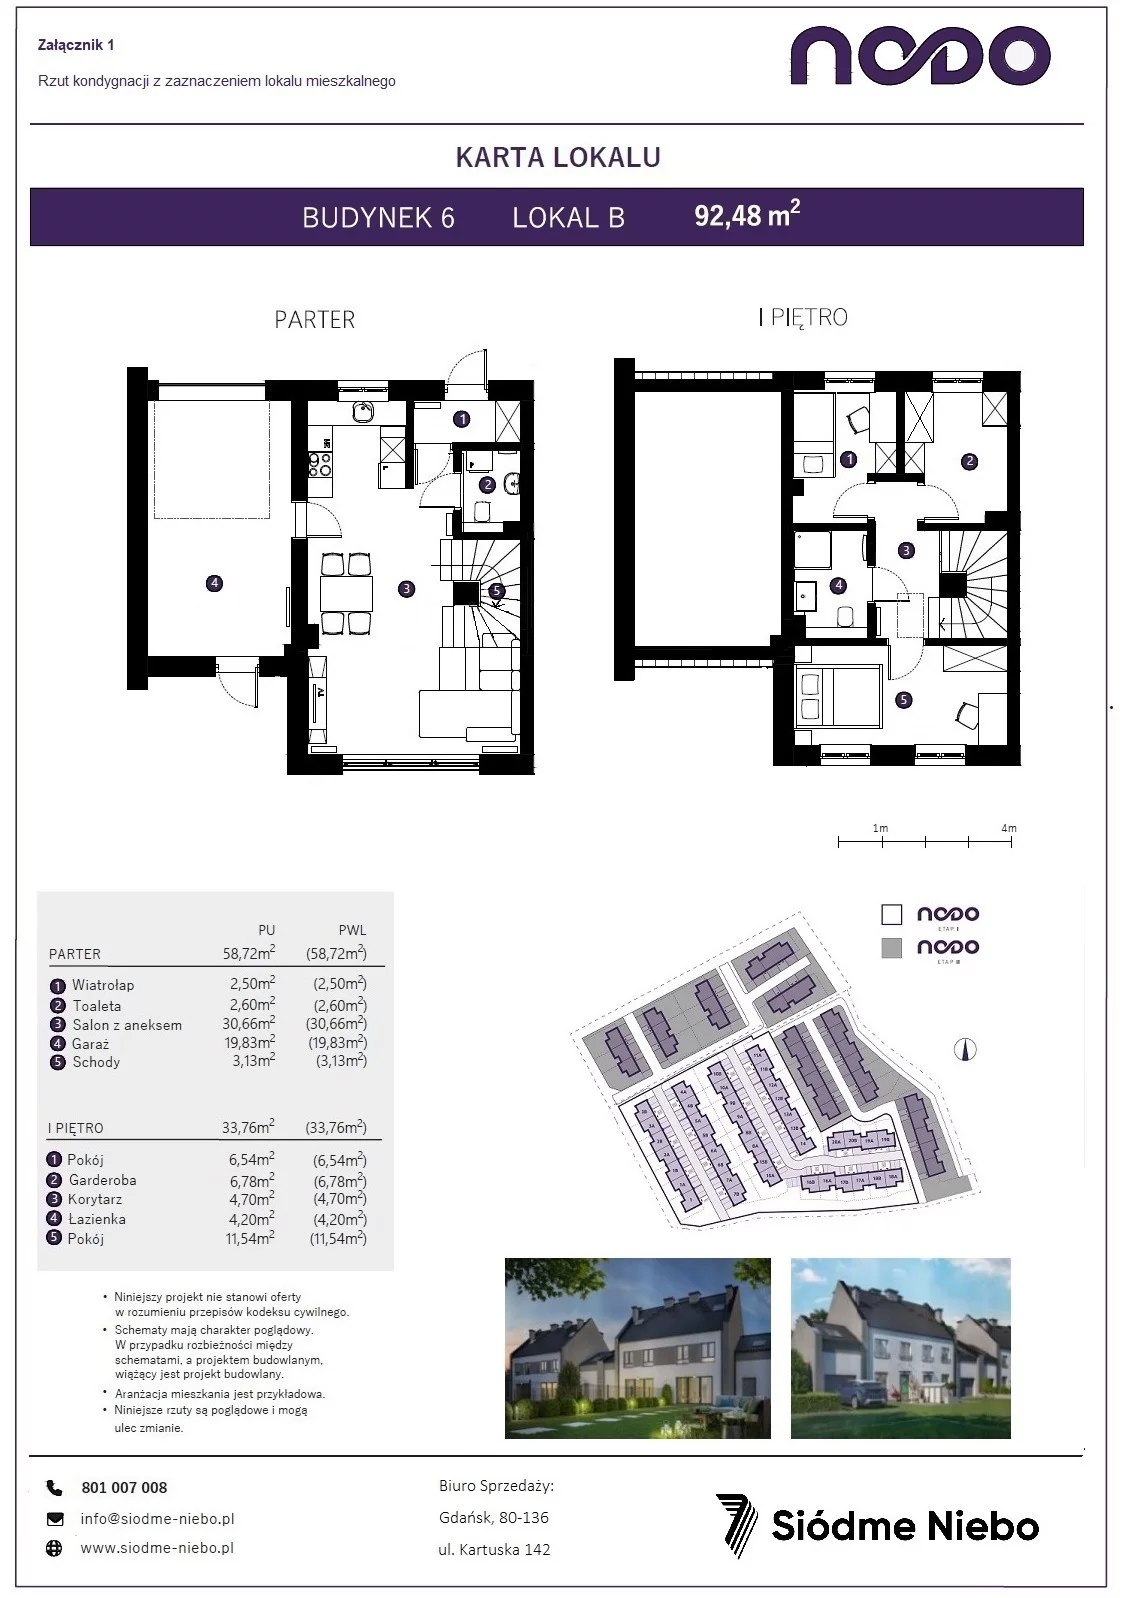 Mieszkanie 92,48 m², parter, oferta nr 6B, Osiedle Nodo, Gdańsk, Jasień, ul. Lubowidzka